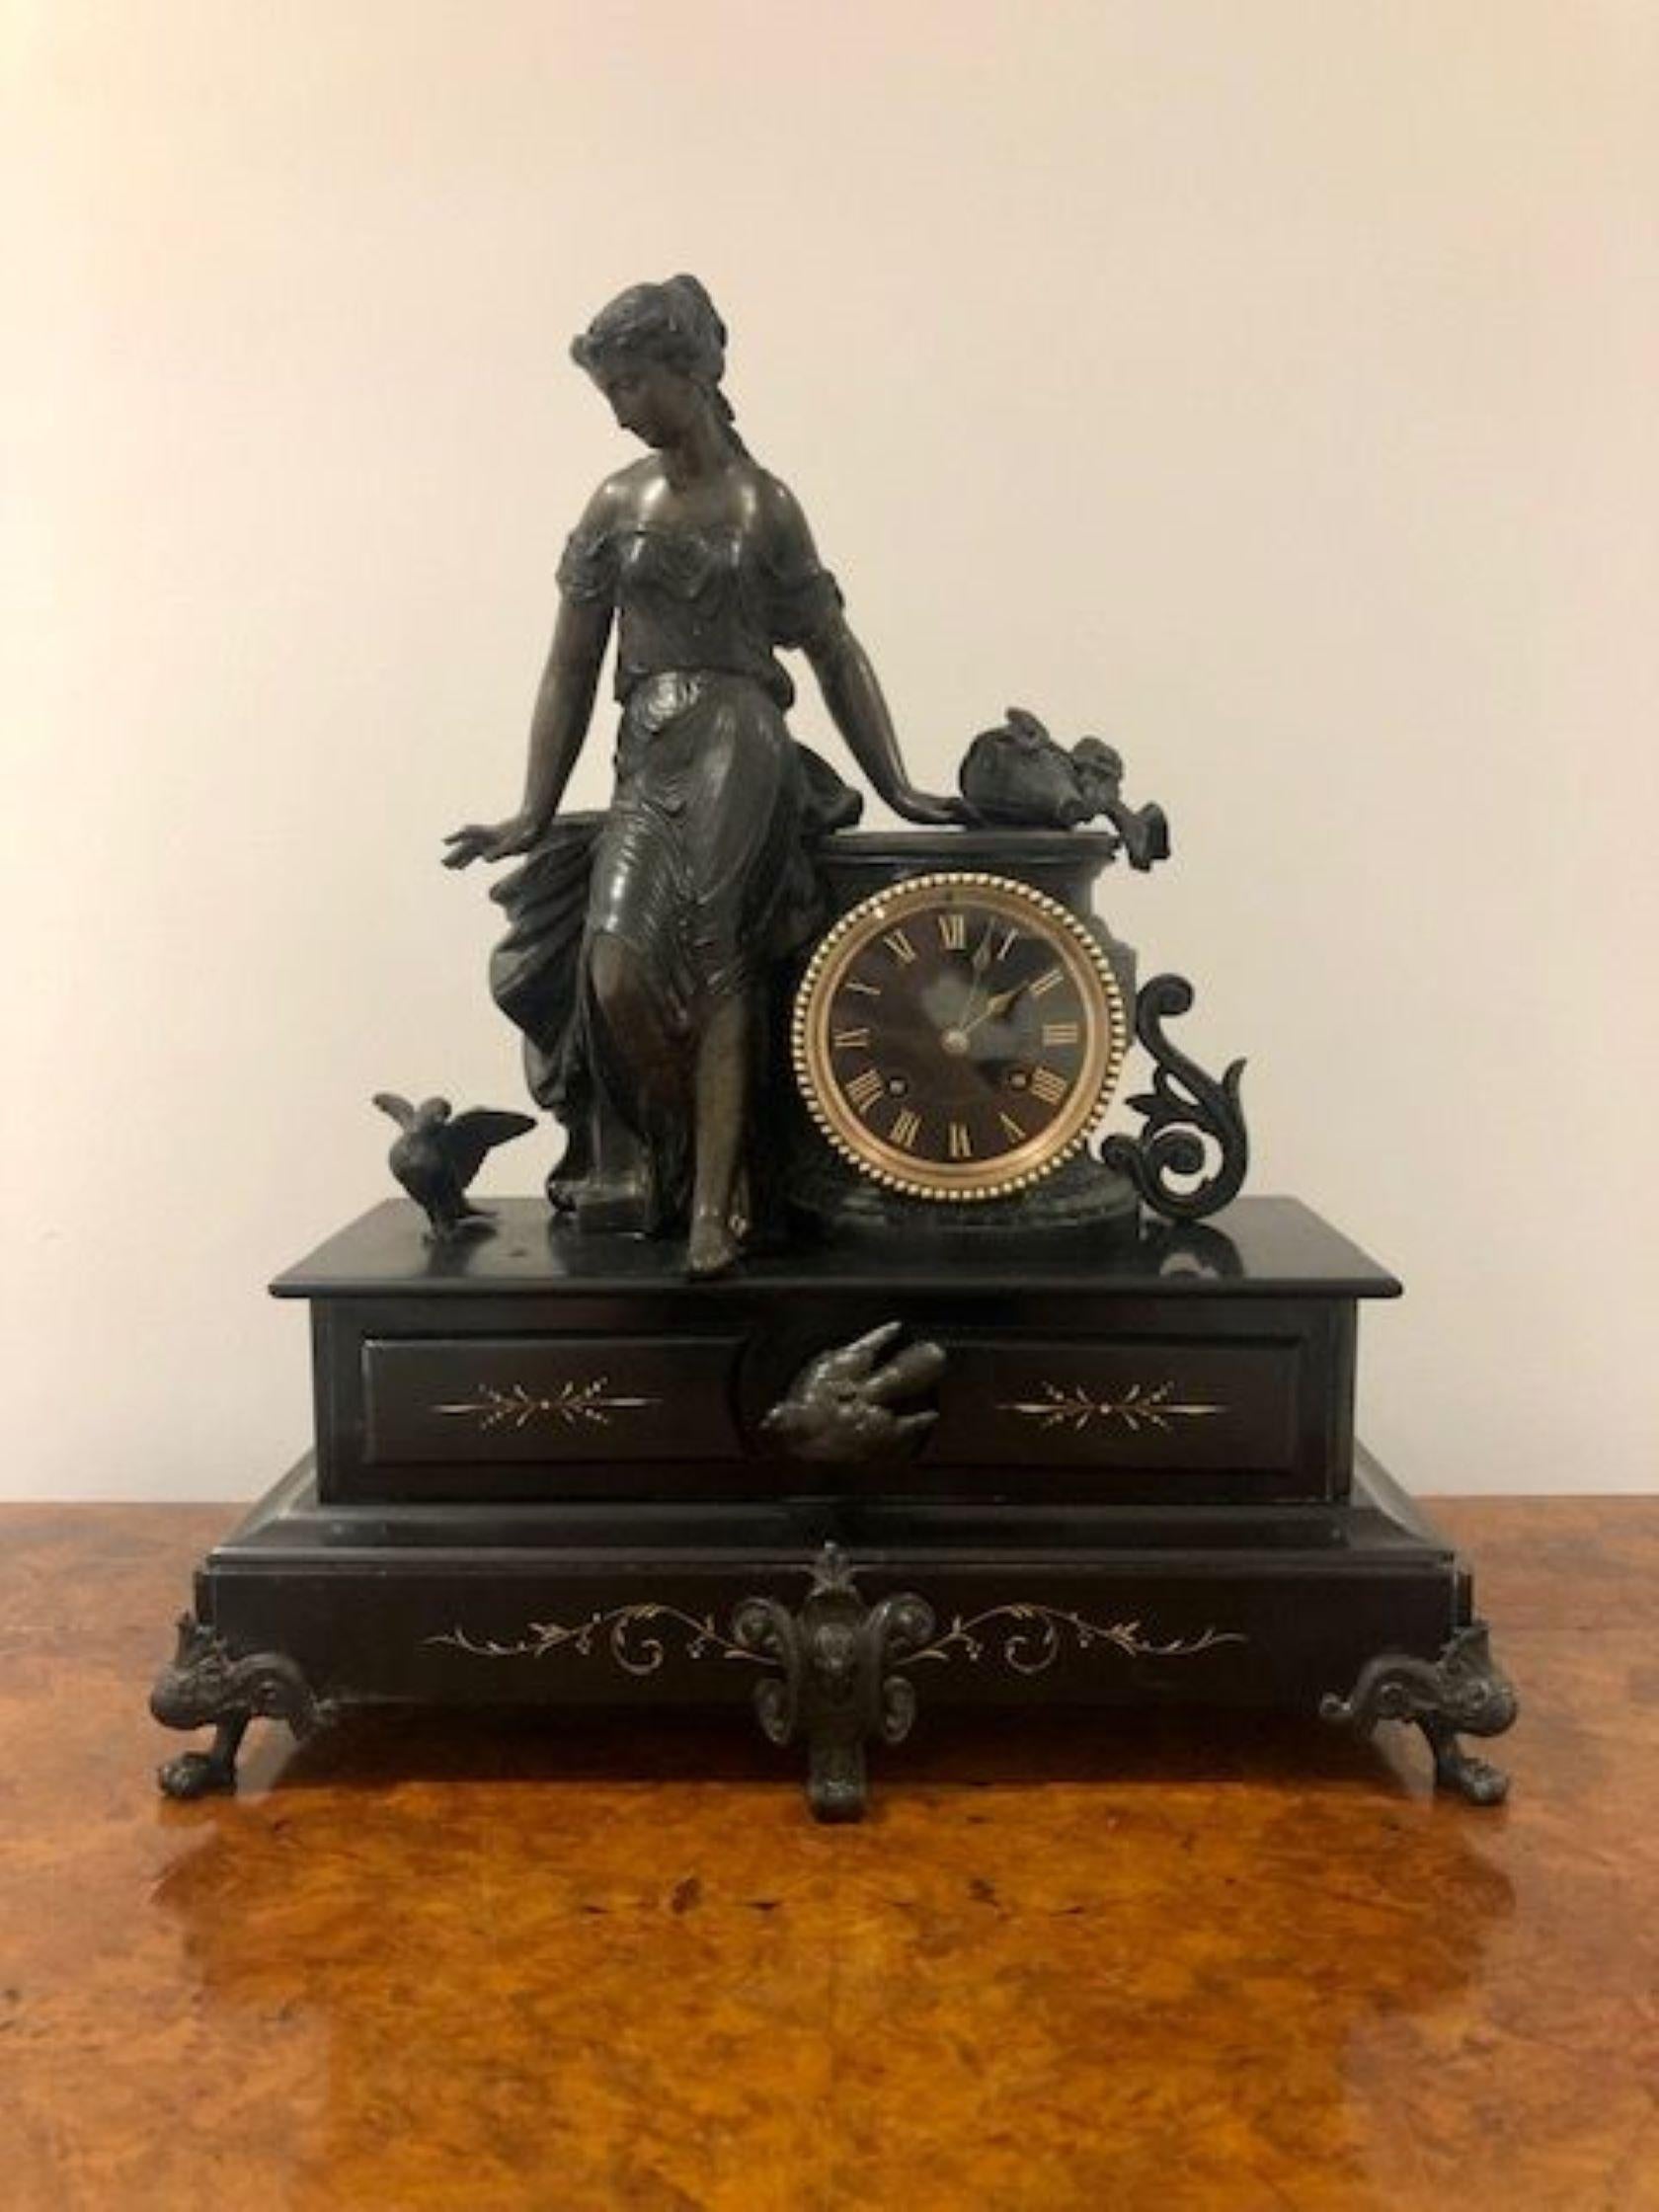 Grande horloge de manteau de qualité victorienne, avec une monture figurative en bronze représentant une dame avec des oiseaux, flanquée d'une horloge circulaire ornée d'une lunette en laiton et d'un bord biseauté. La porte en verre s'ouvre pour